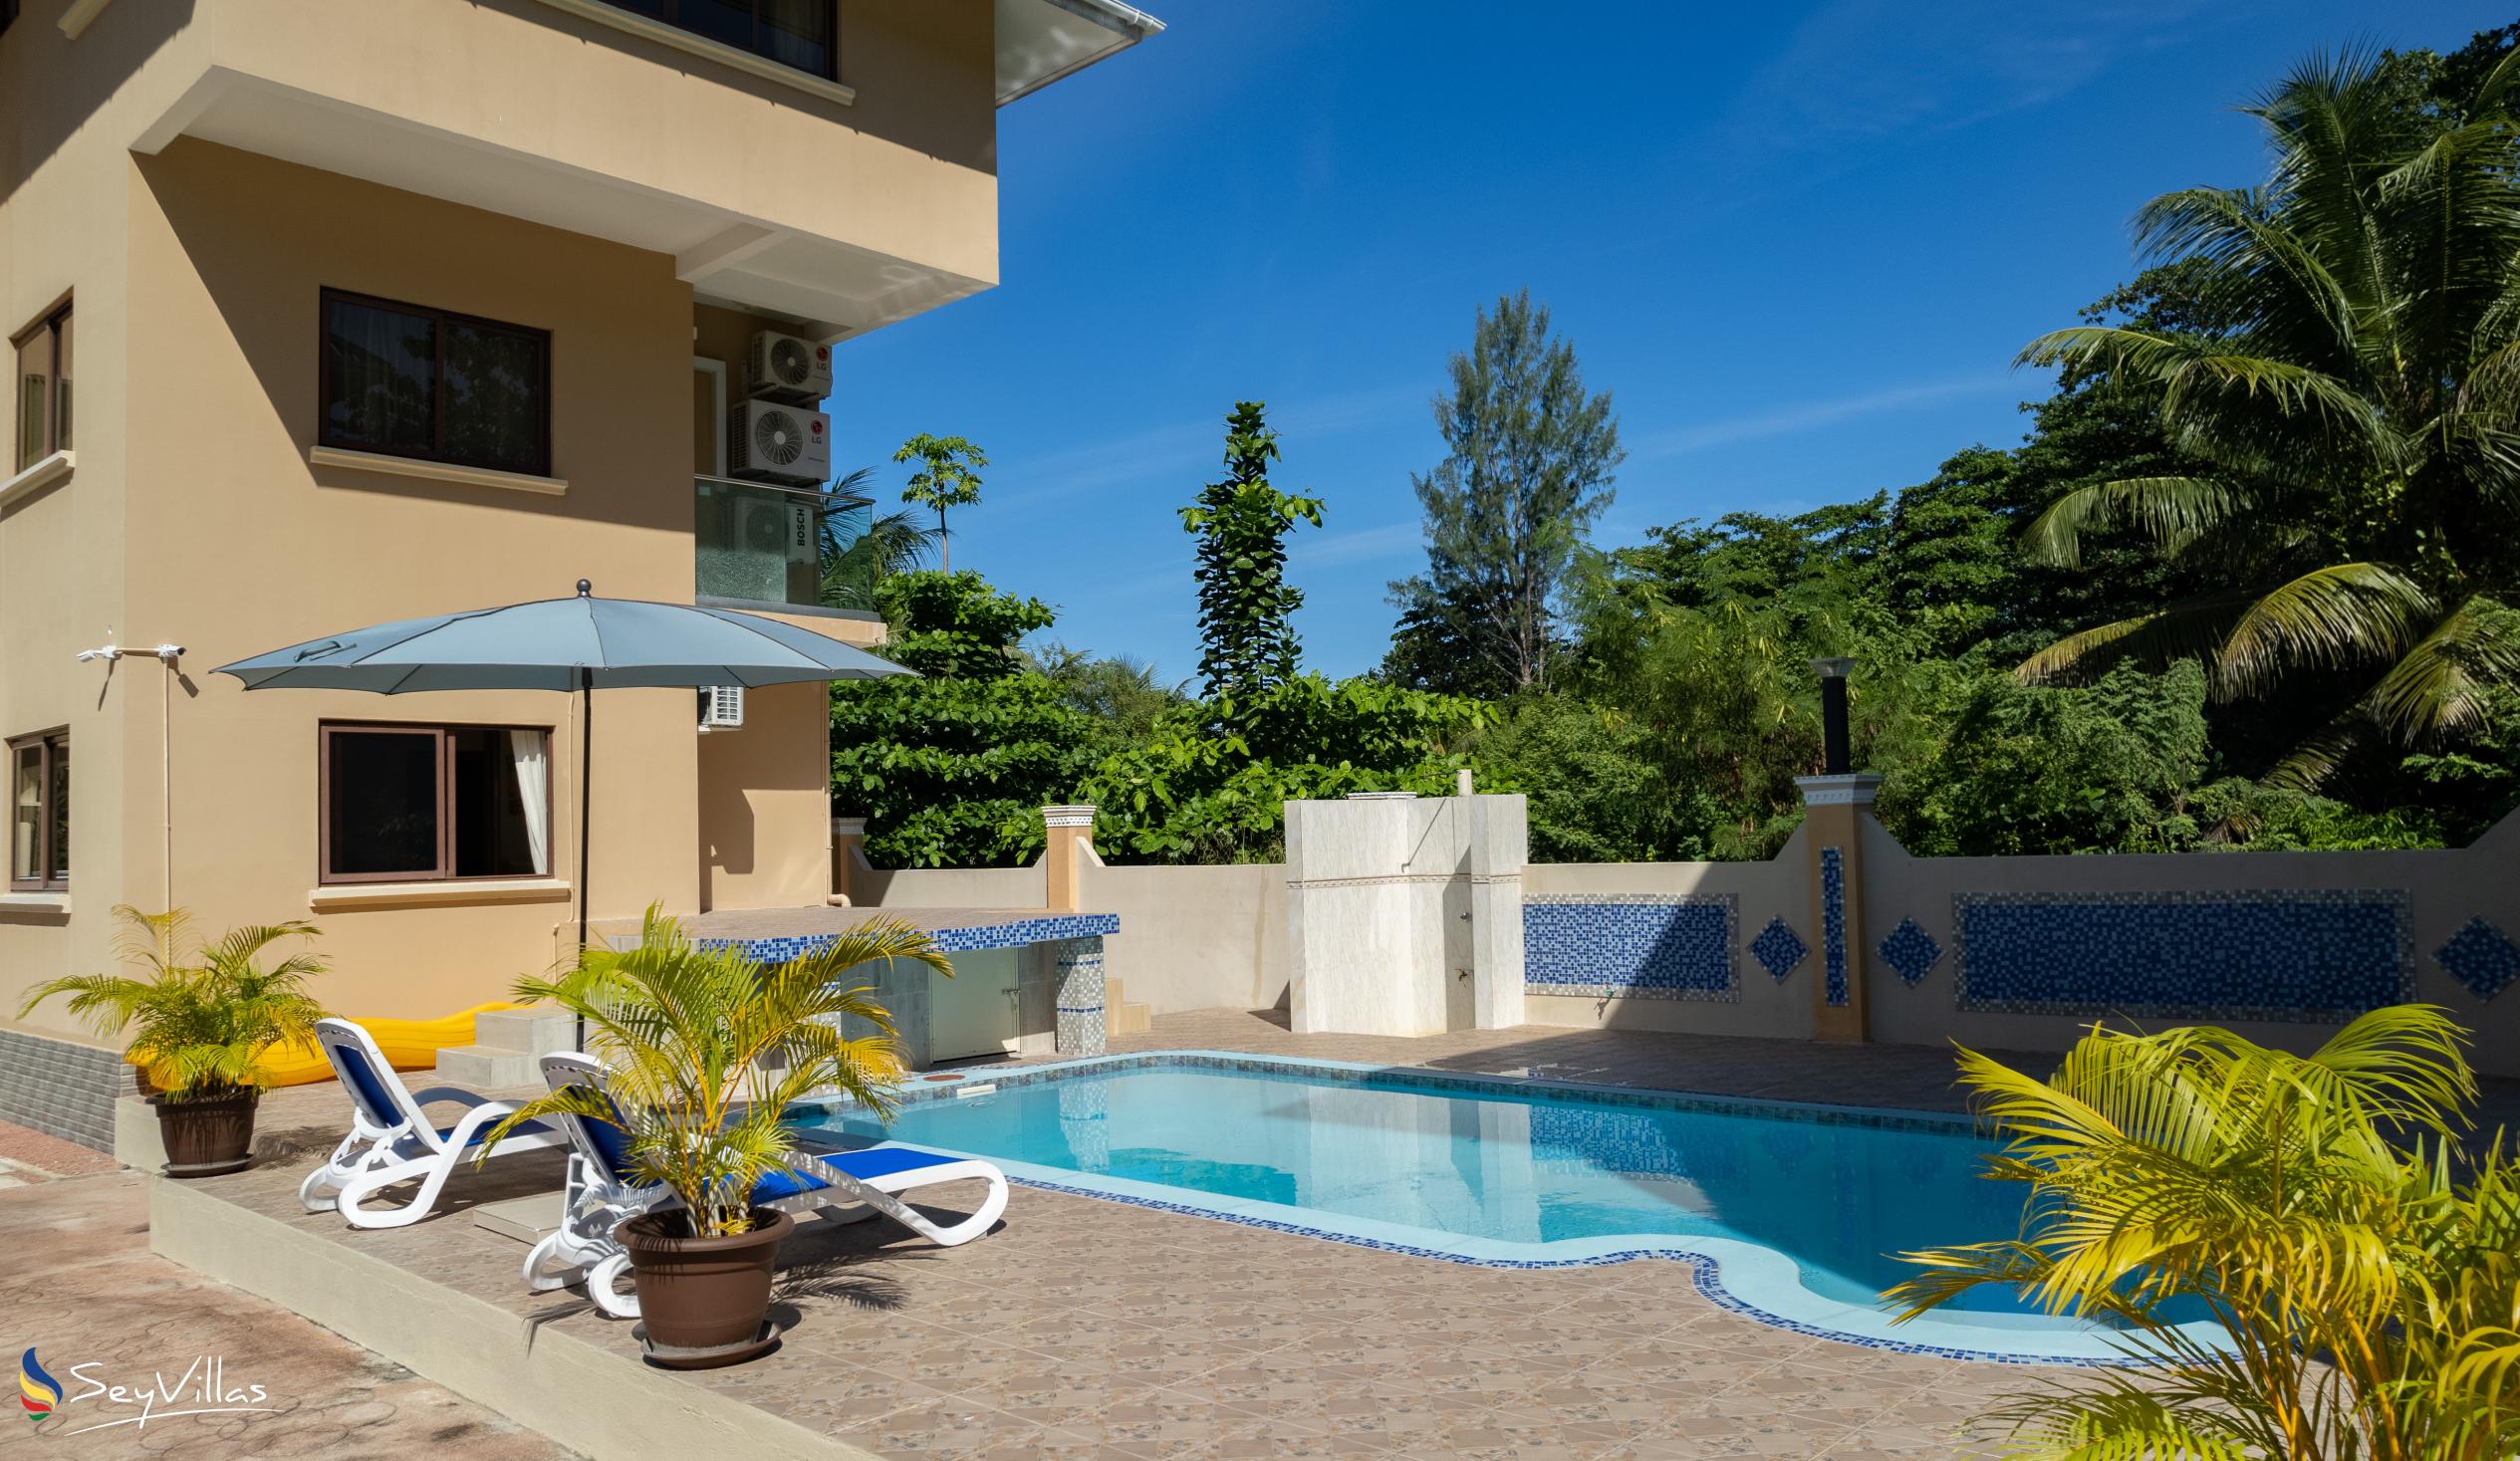 Foto 5: Stone Self Catering Apartments - Aussenbereich - Praslin (Seychellen)